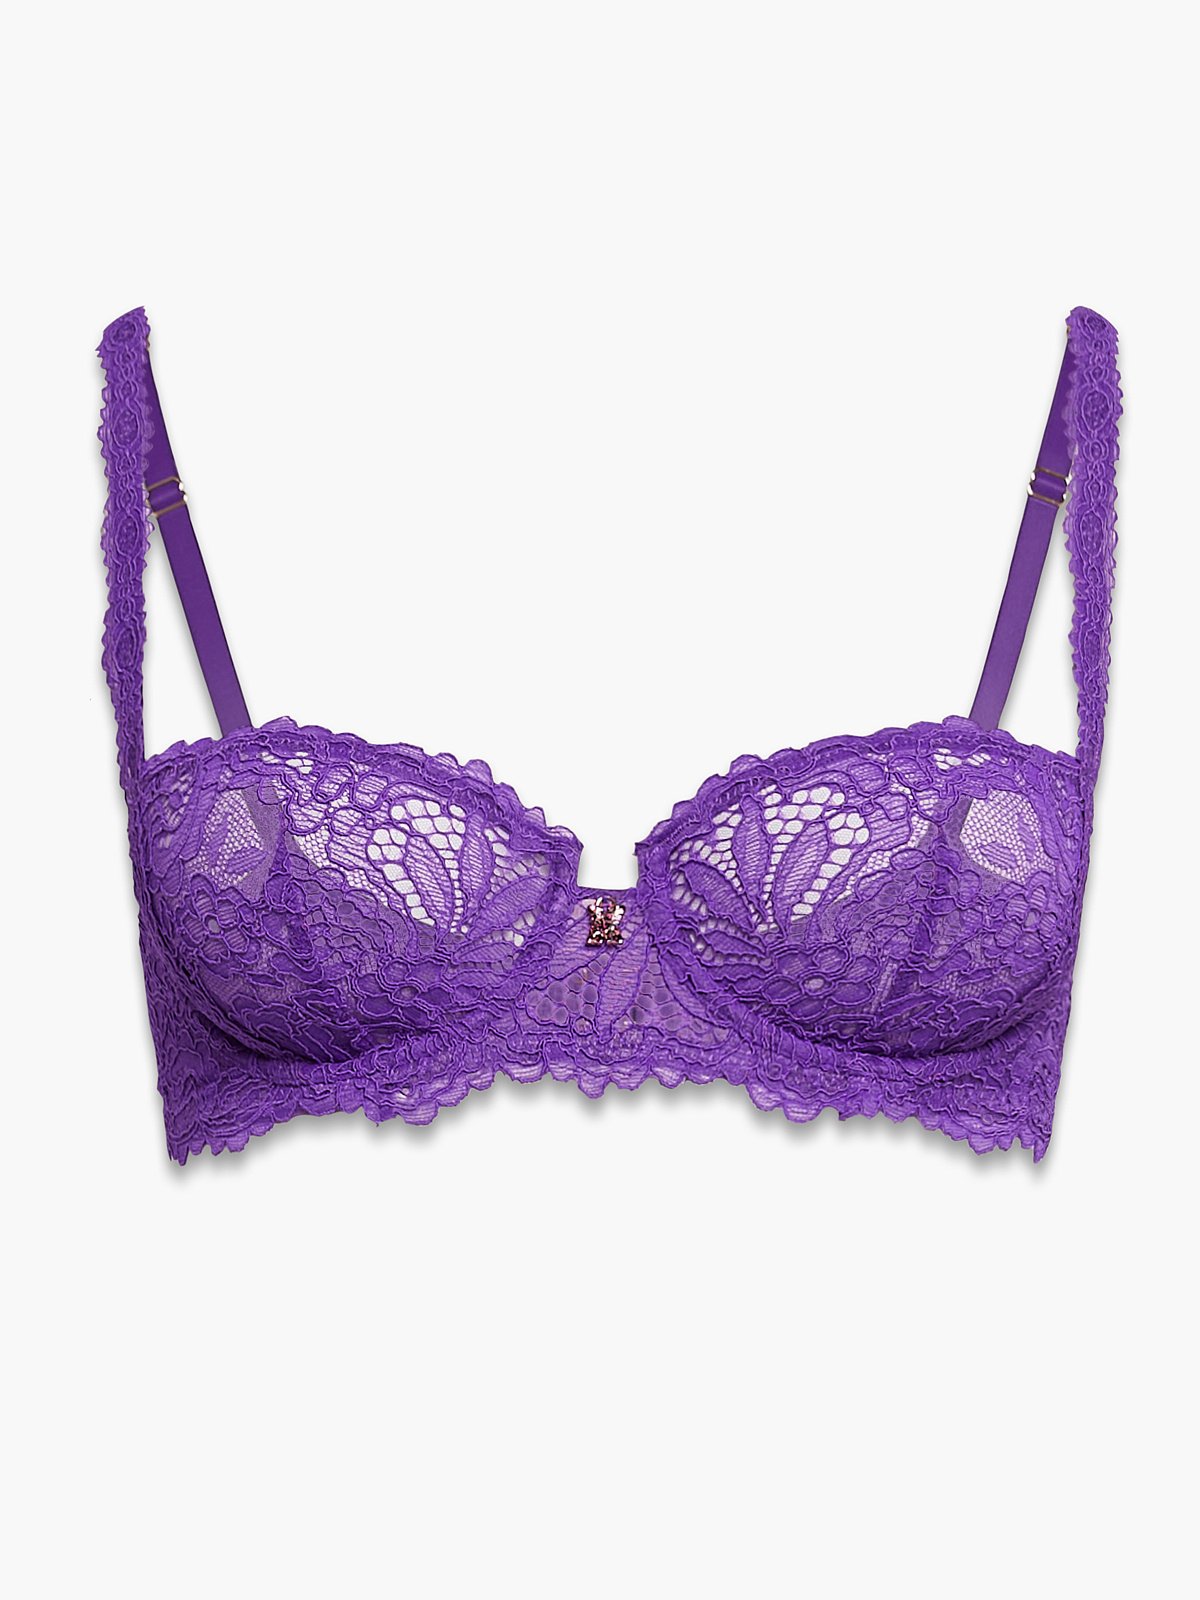 Panache Envy Balconette Bra  Unlined bra, Purple lace bra